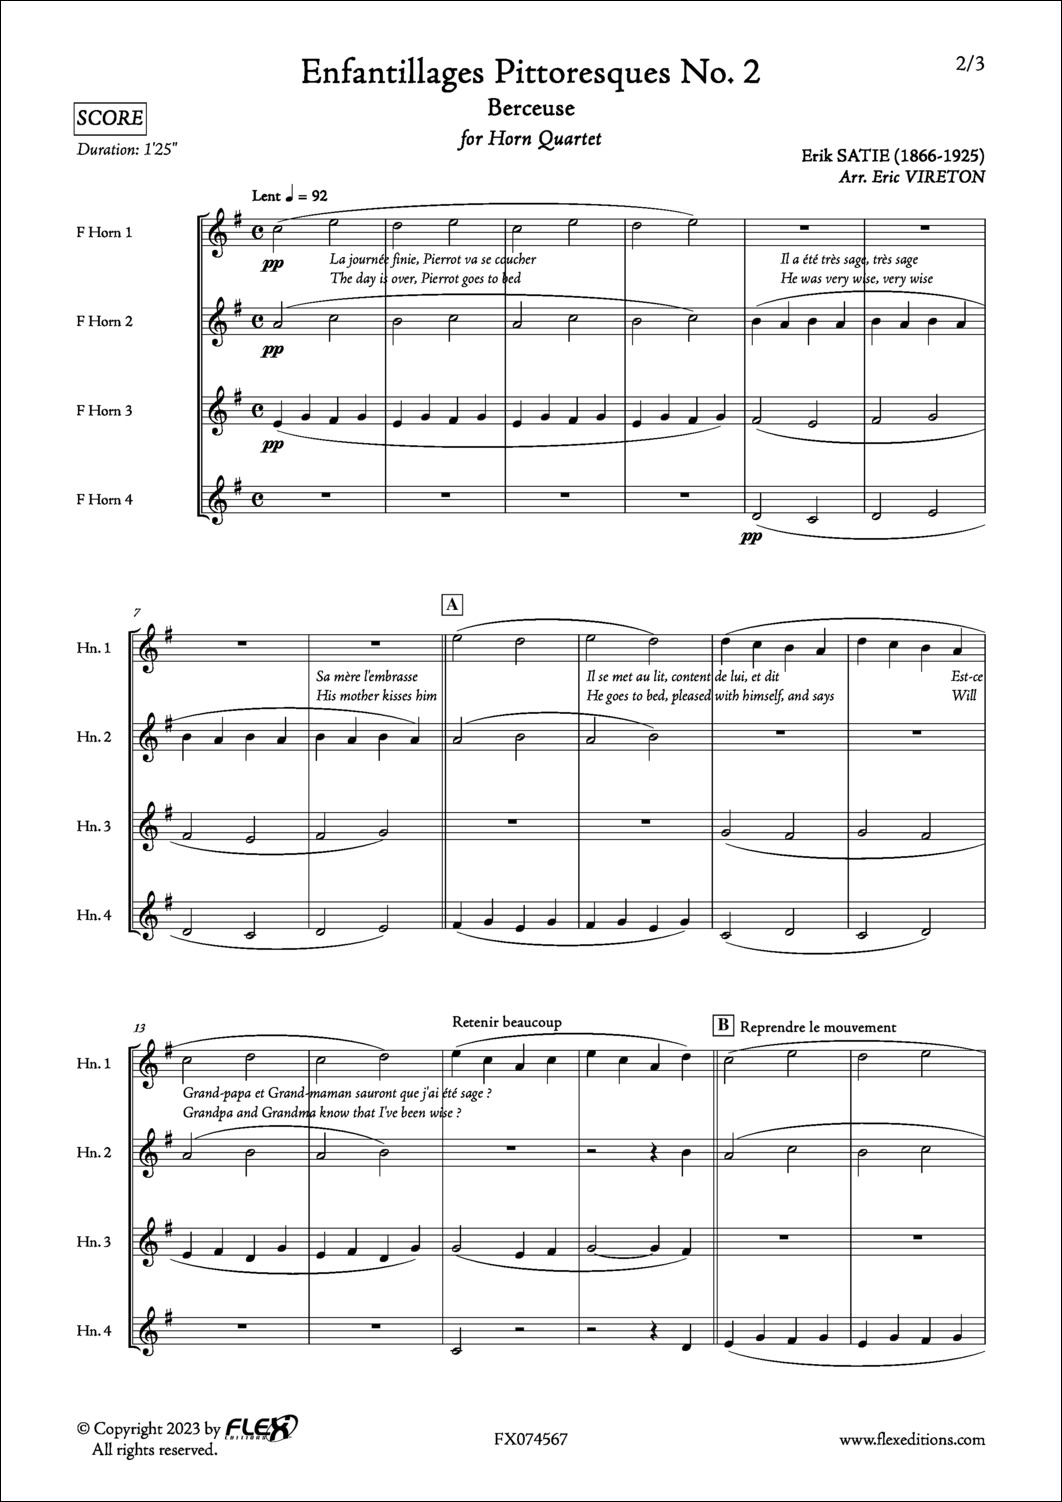 Enfantillages Pittoresques No. 2 - Berceuse - E. SATIE - <font color=#666666>Horn Quartet</font>